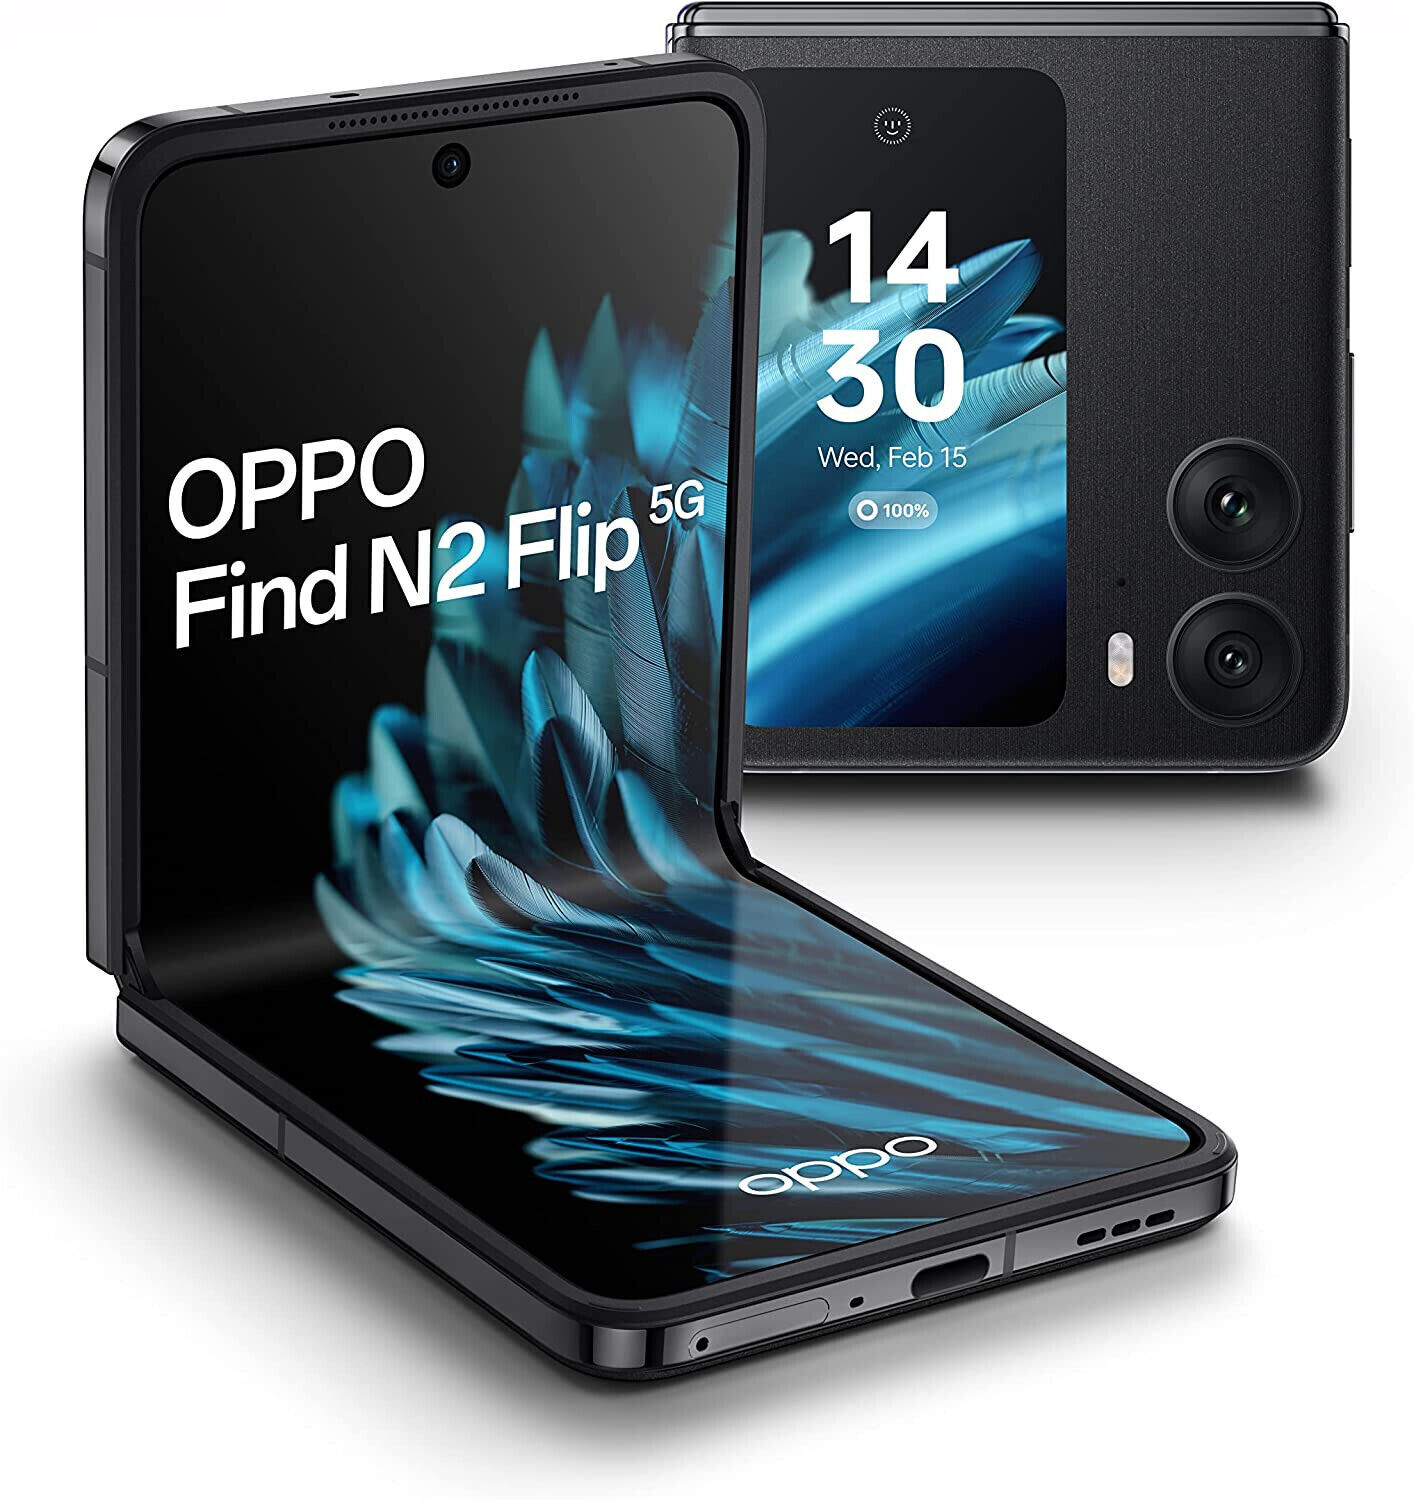 OPPO Oppo Find N2 Flip